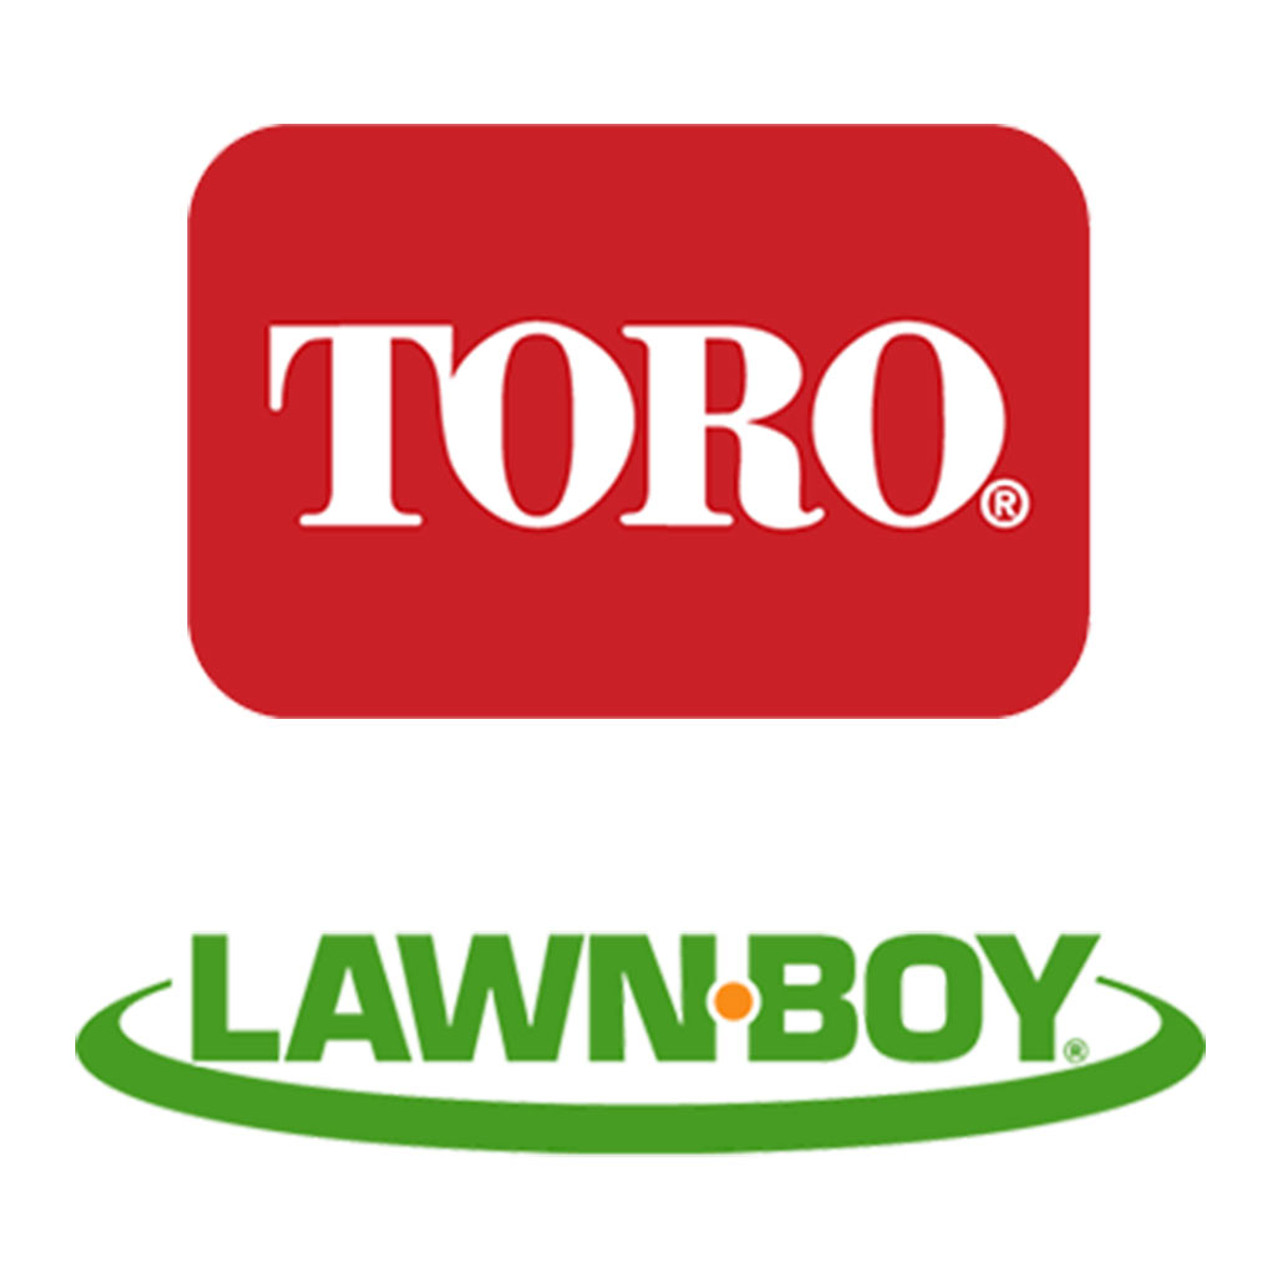 Toro Lawn-Boy 138-4863 Plug-Wear